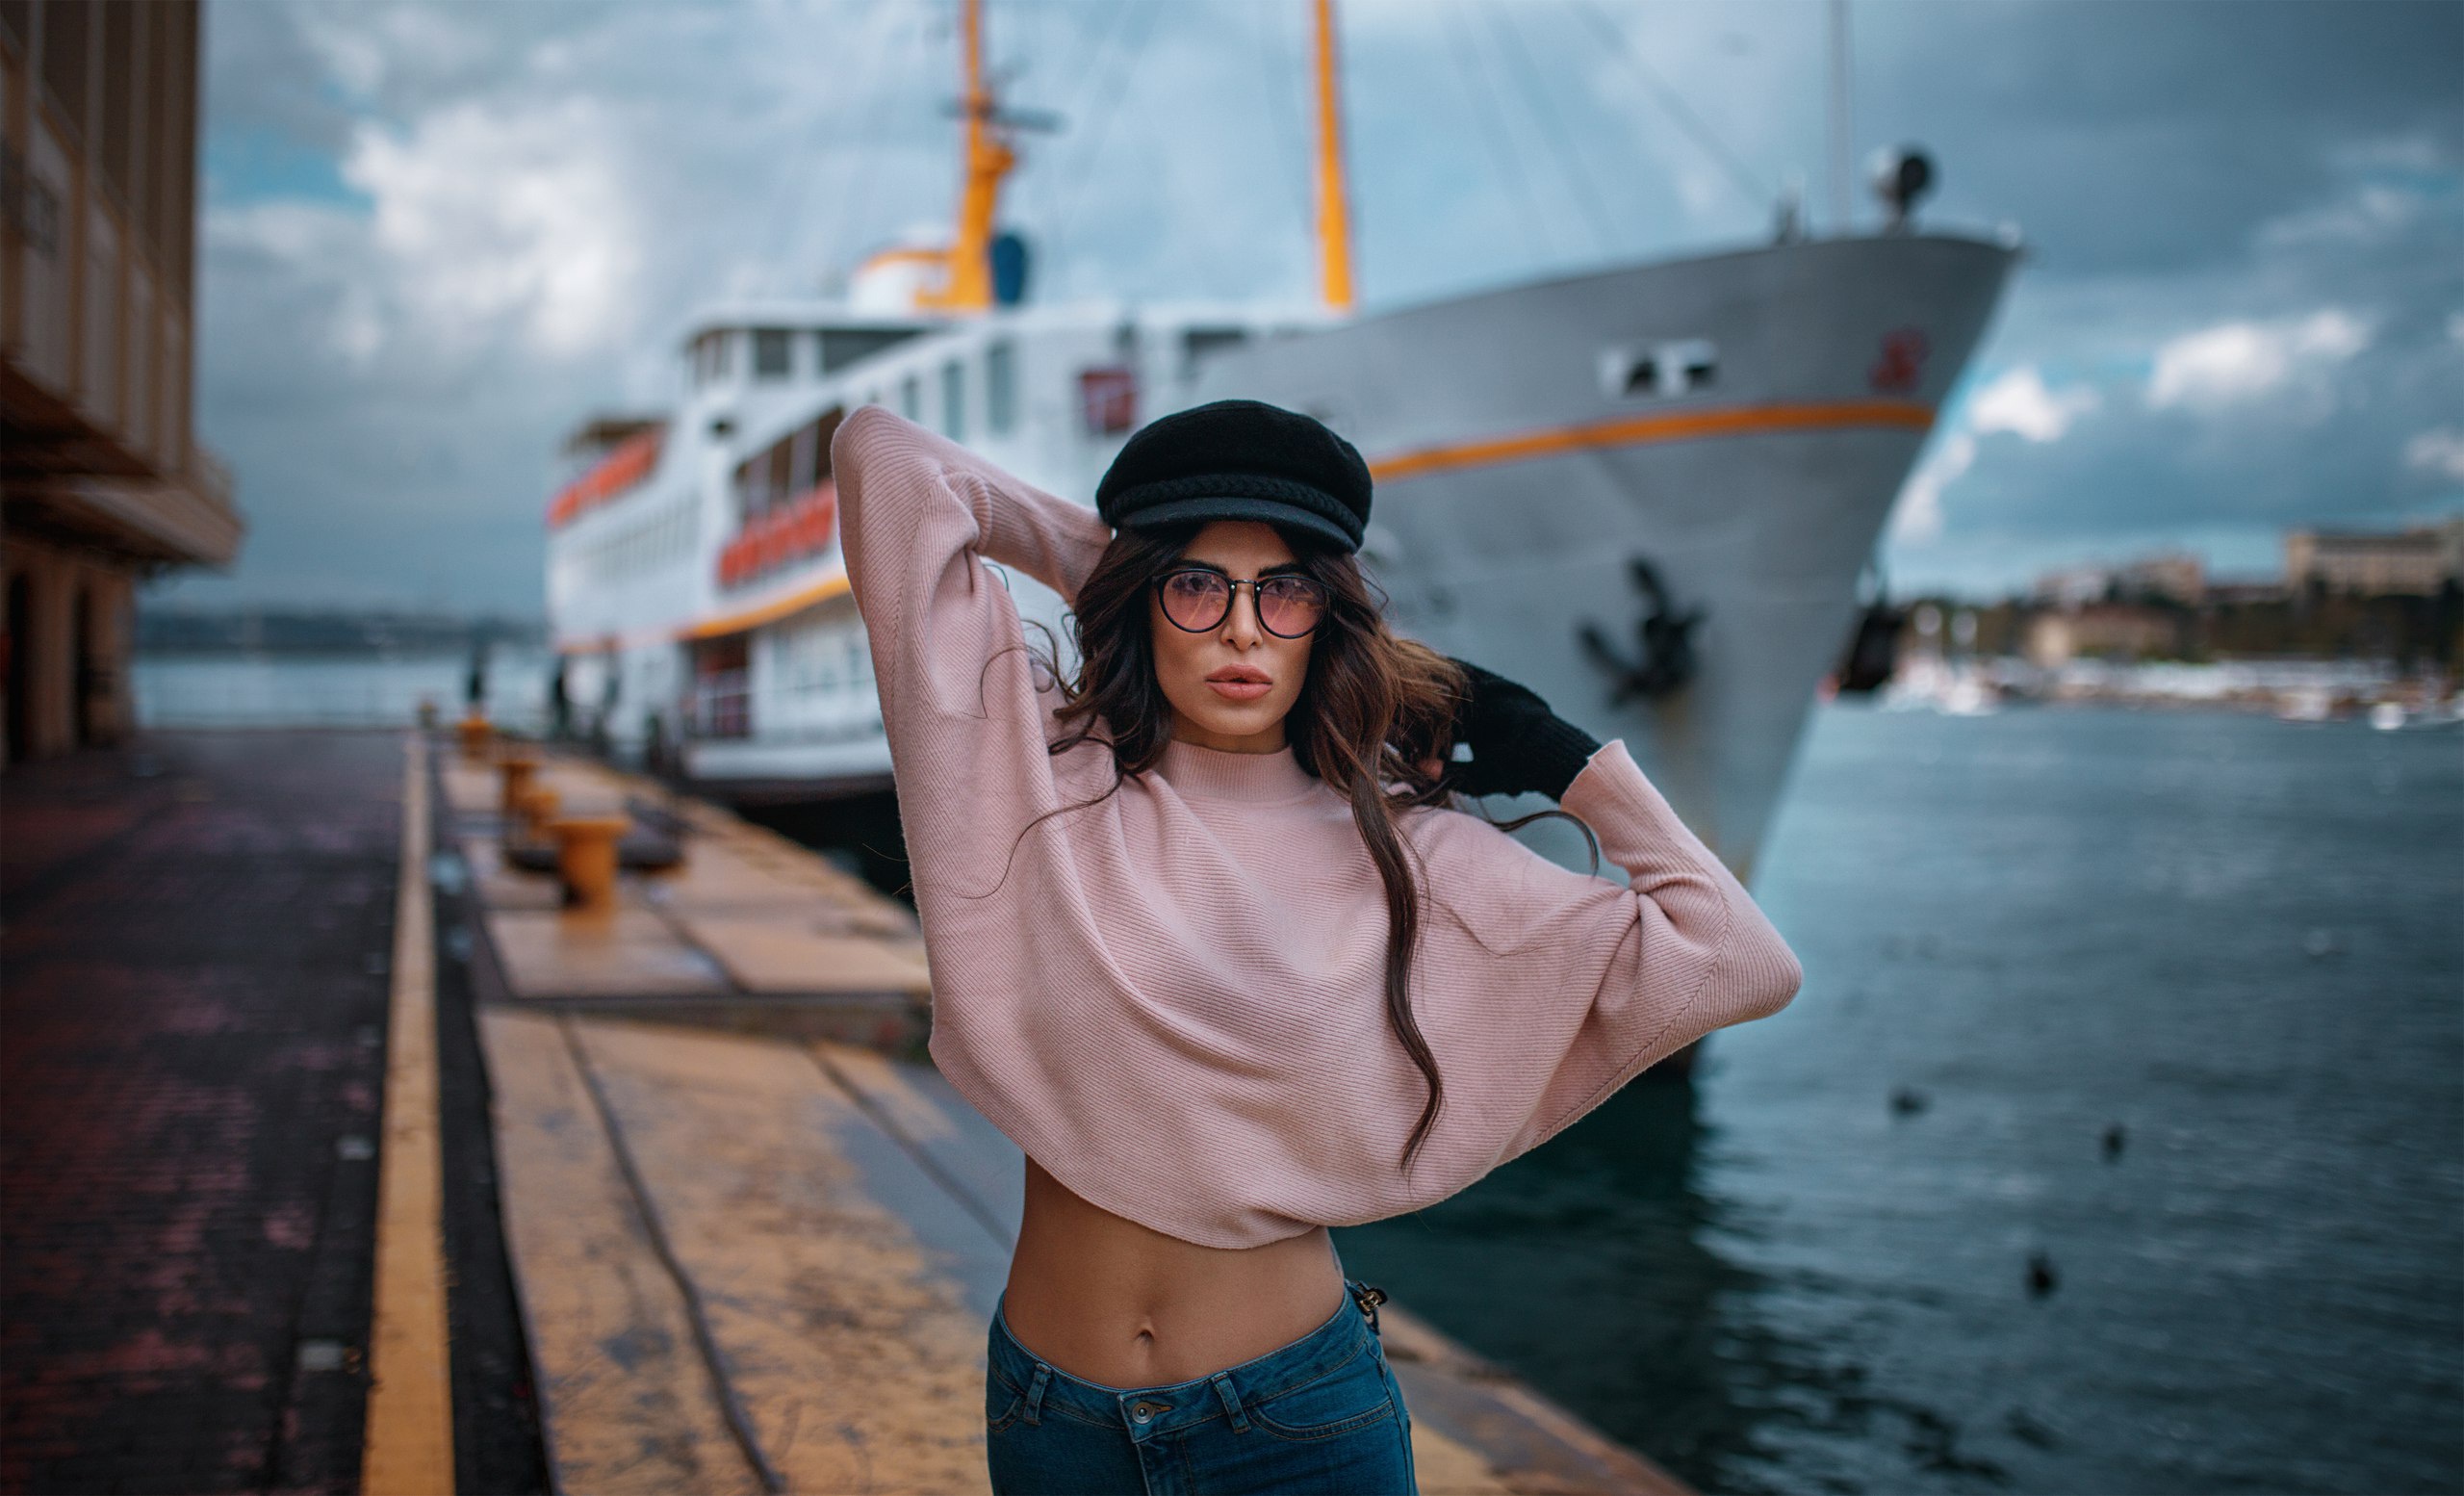 Сексуальная морячка позирует на корабле показывая свою киску